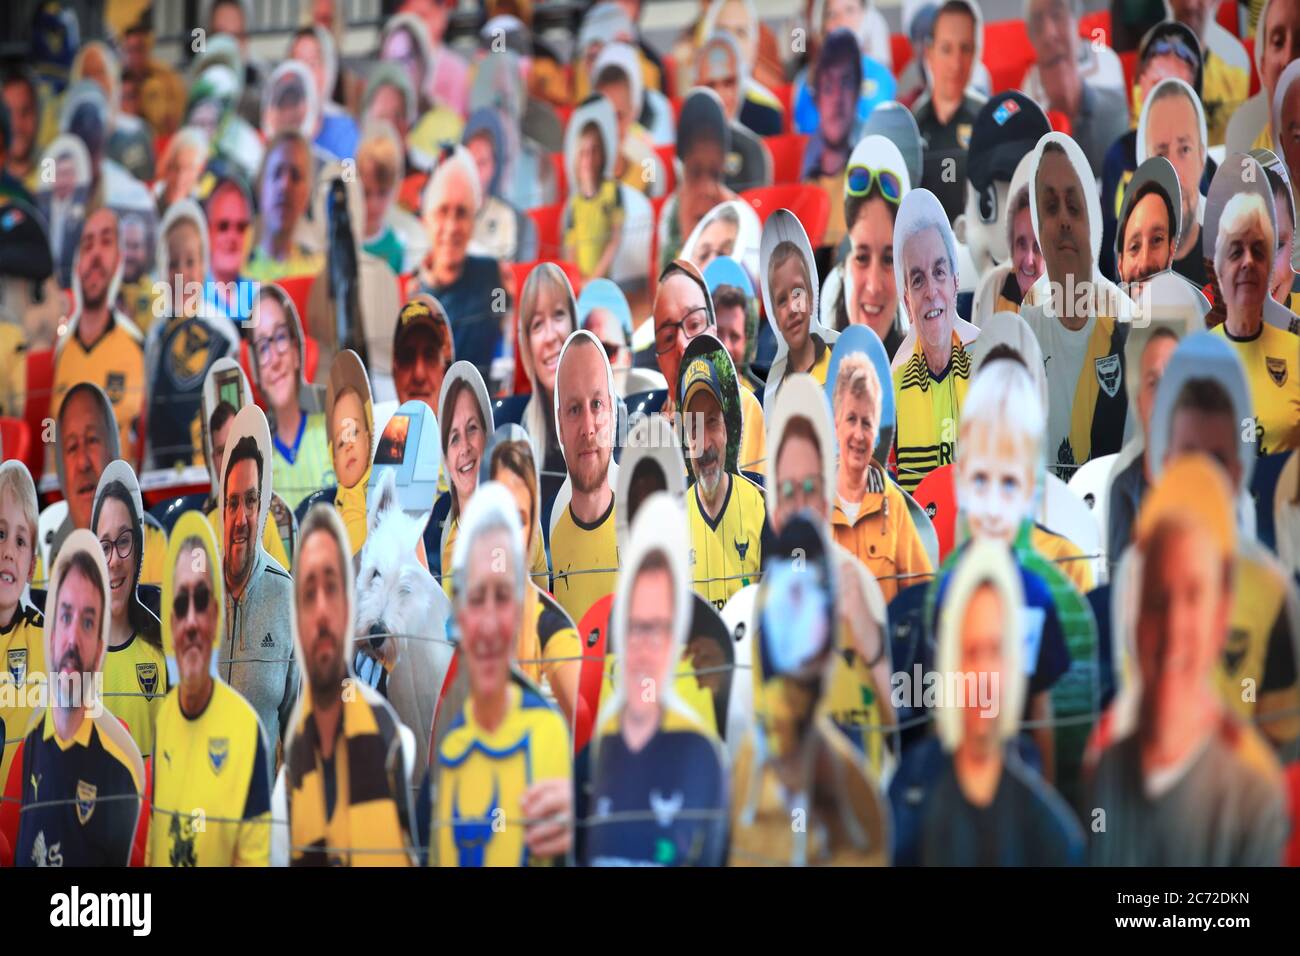 Una visione generale del taglio di cartone dei tifosi negli stand prima della finale di gioco di Sky Bet League One al Wembley Stadium, Londra. Foto Stock